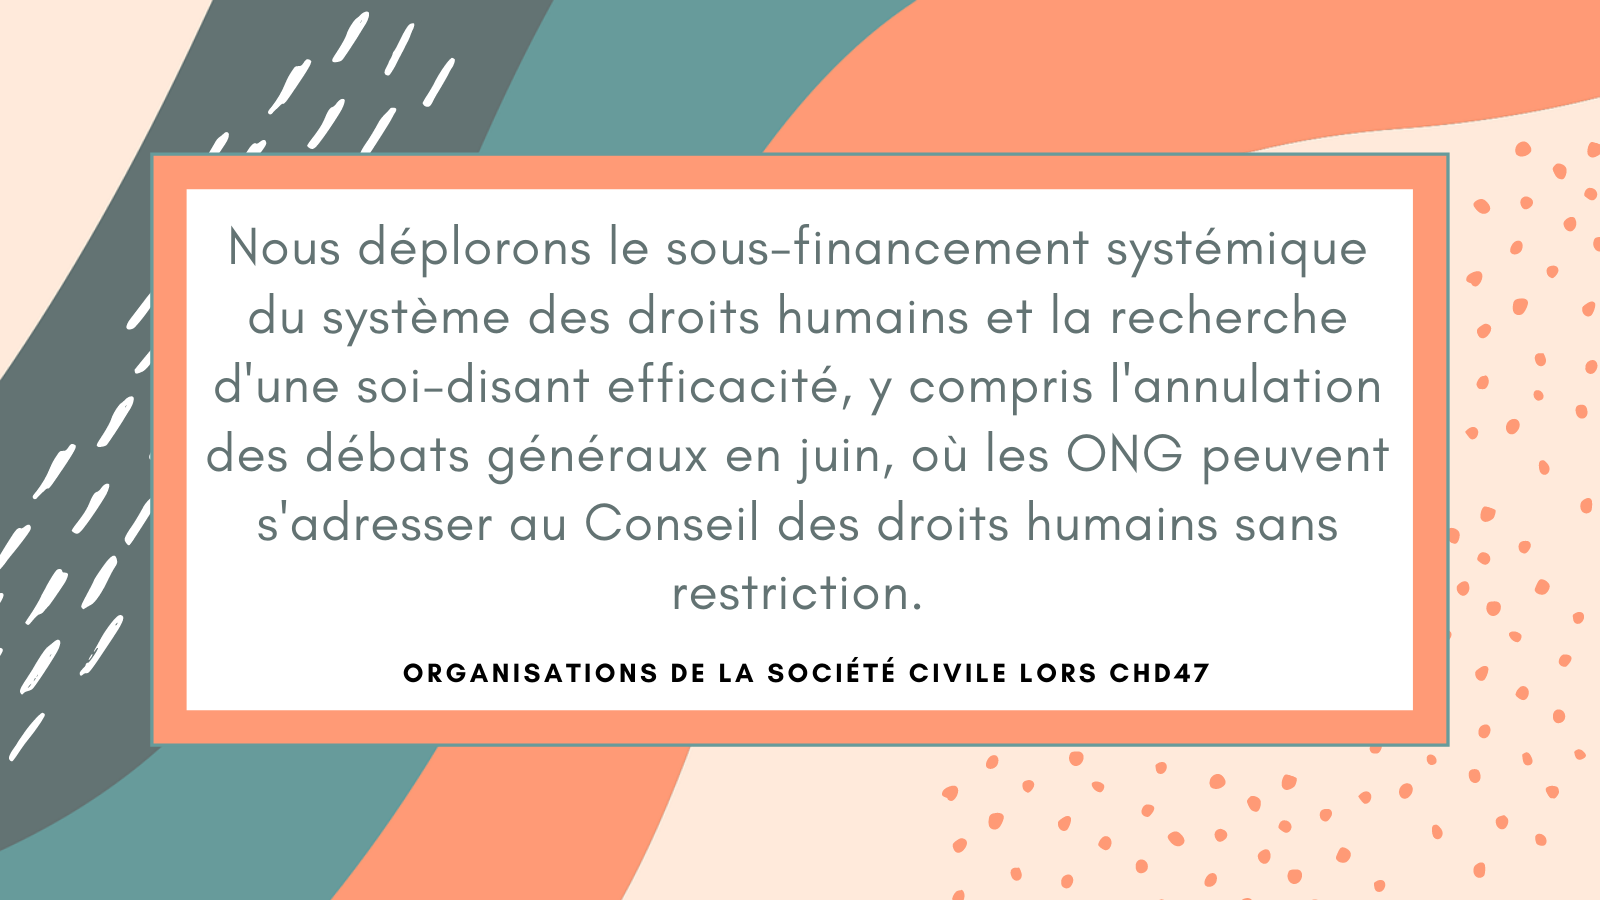 Nous déplorons le sous-financement systémique du système des droits humains des Nations unies et la recherche d'une soi-disant efficacité, y compris l'annulation des débats généraux en juin, une partie essentielle de l'ordre du jour où les ONG peuvent s'adresser au Conseil des droits humains sans restriction.